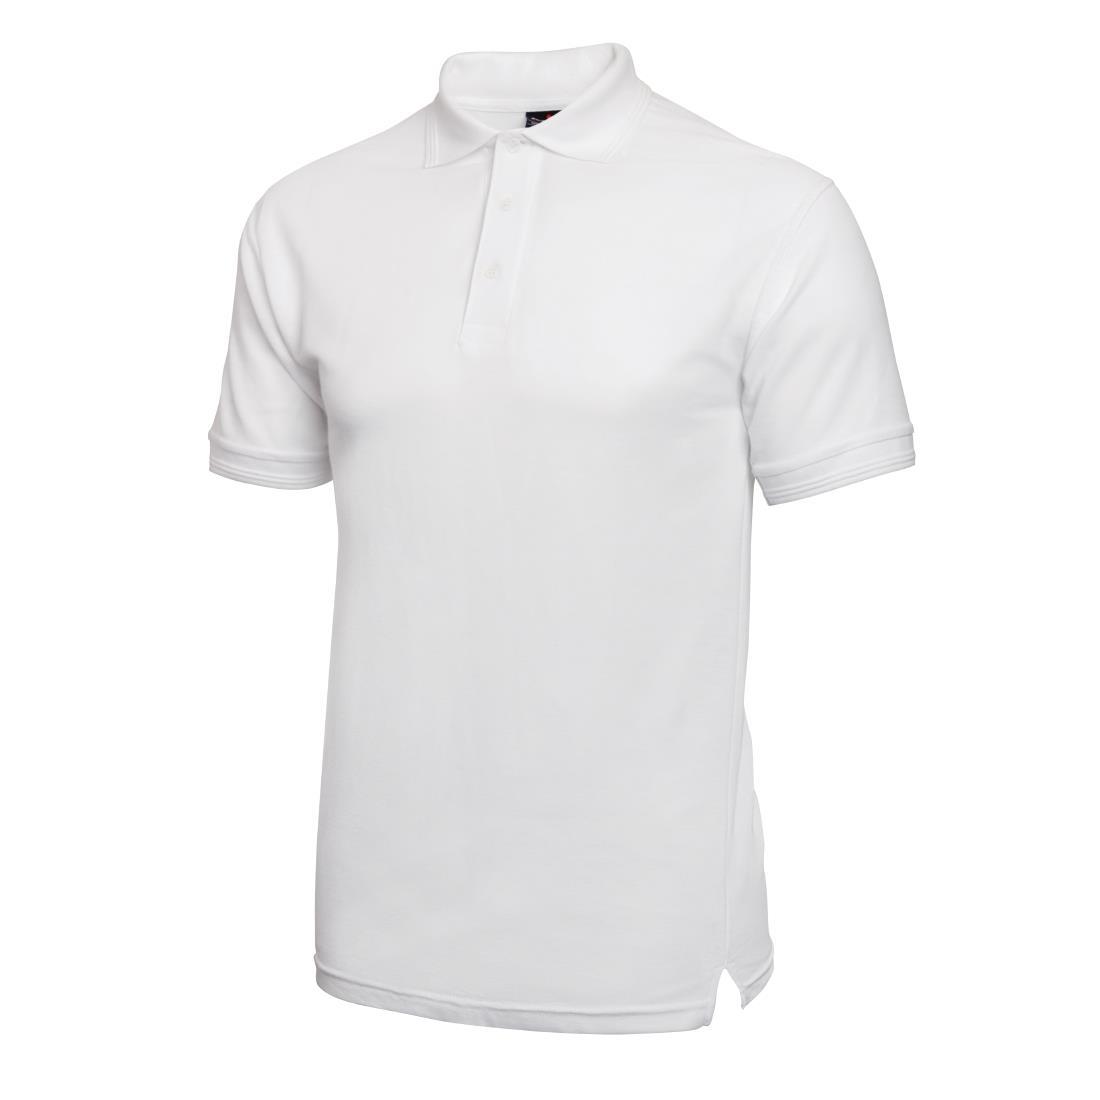 Unisex Polo Shirt White L - A734-L  - 2